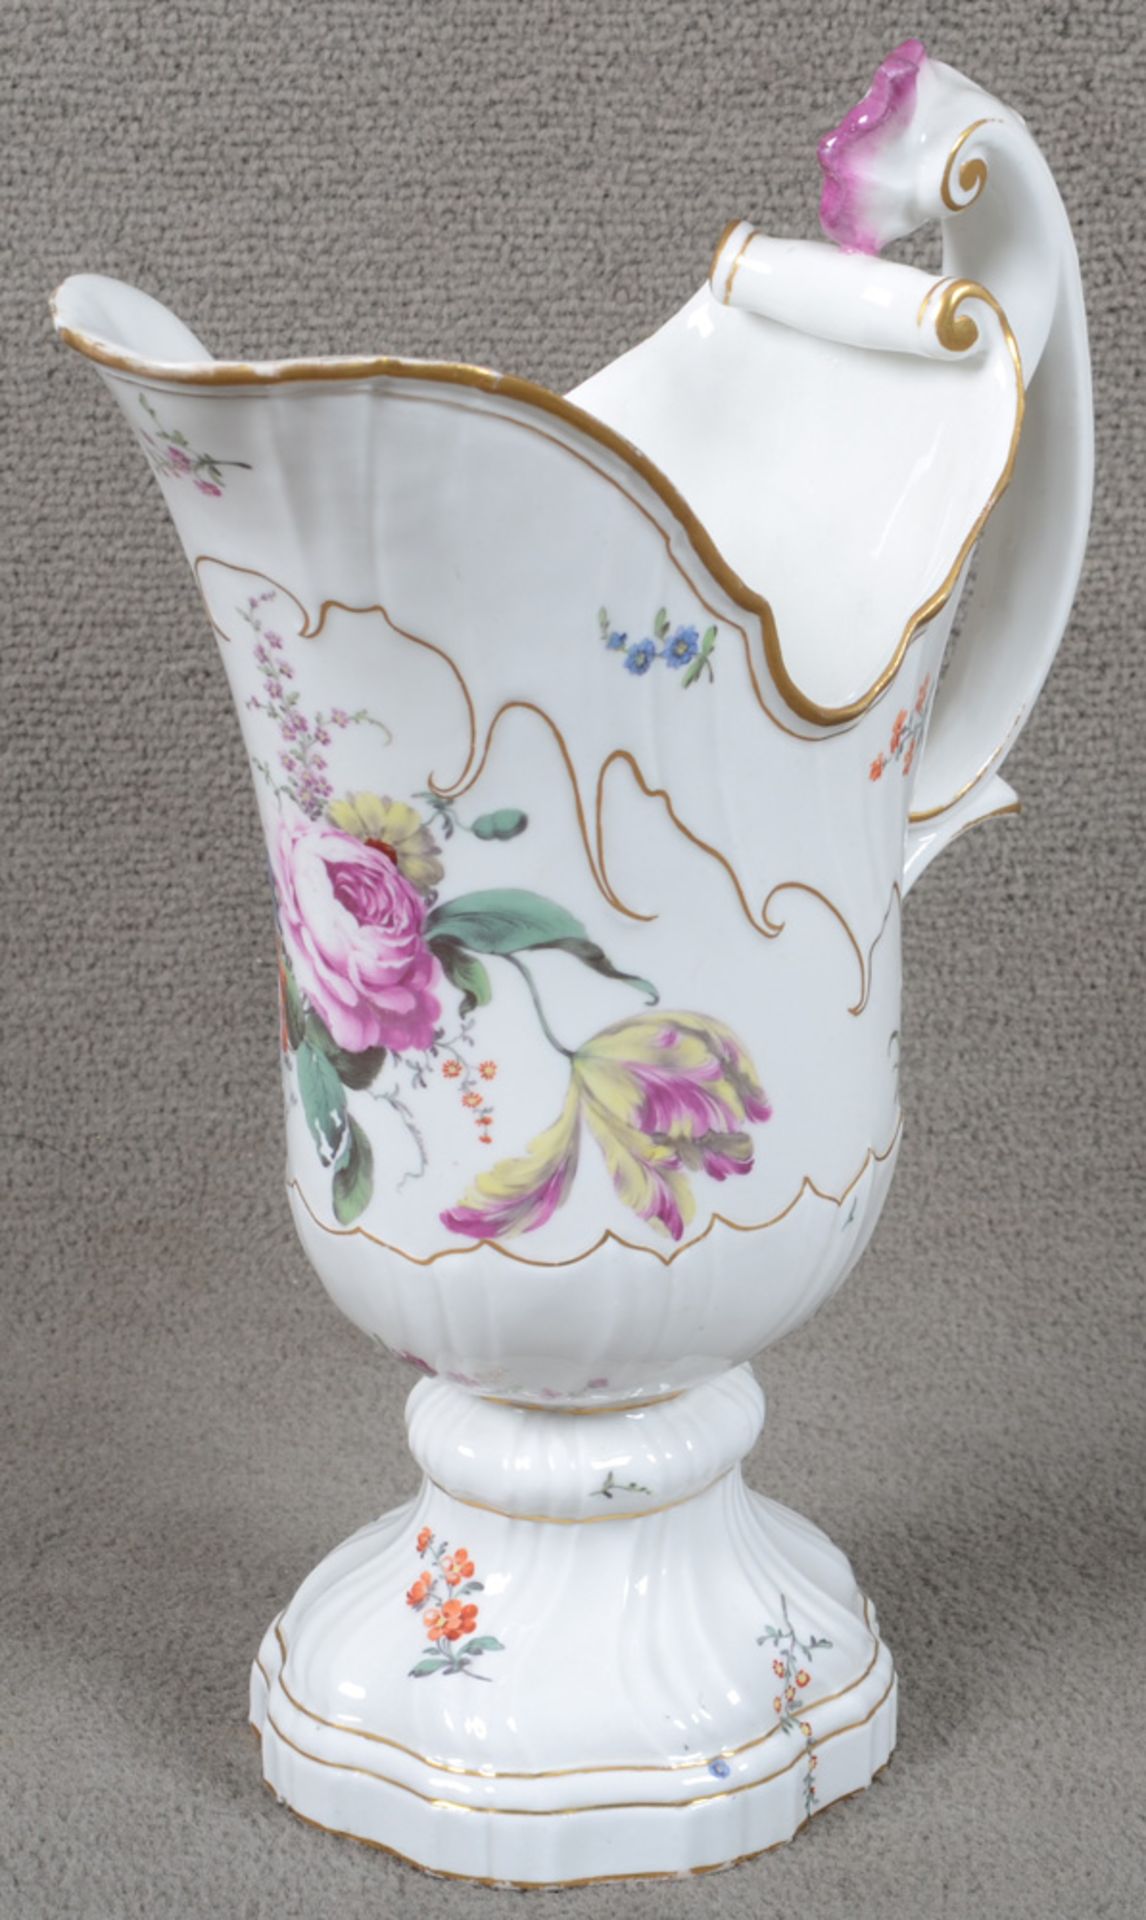 Helmkanne. Höchst um 1765. Porzellan, bunt bemalt mit Floraldekor, Goldrand. Am Boden purpurne